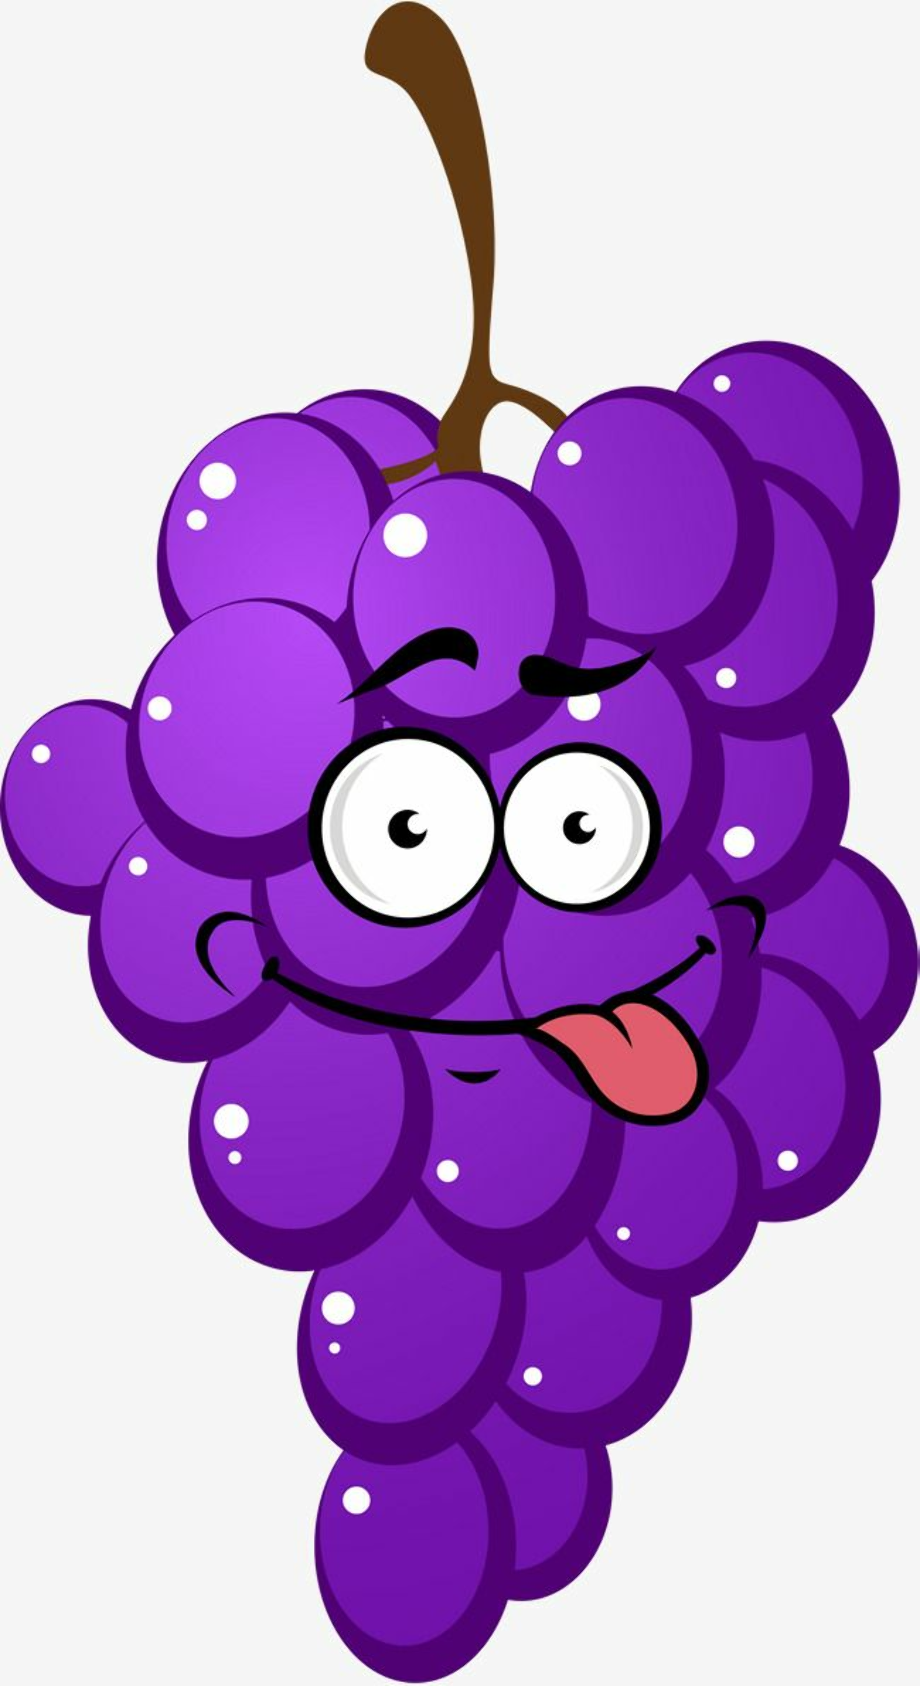 Виноград глазок. Виноград мультяшный. Фиолетовый виноград. Виноград с глазками для детей. Веселый виноград.